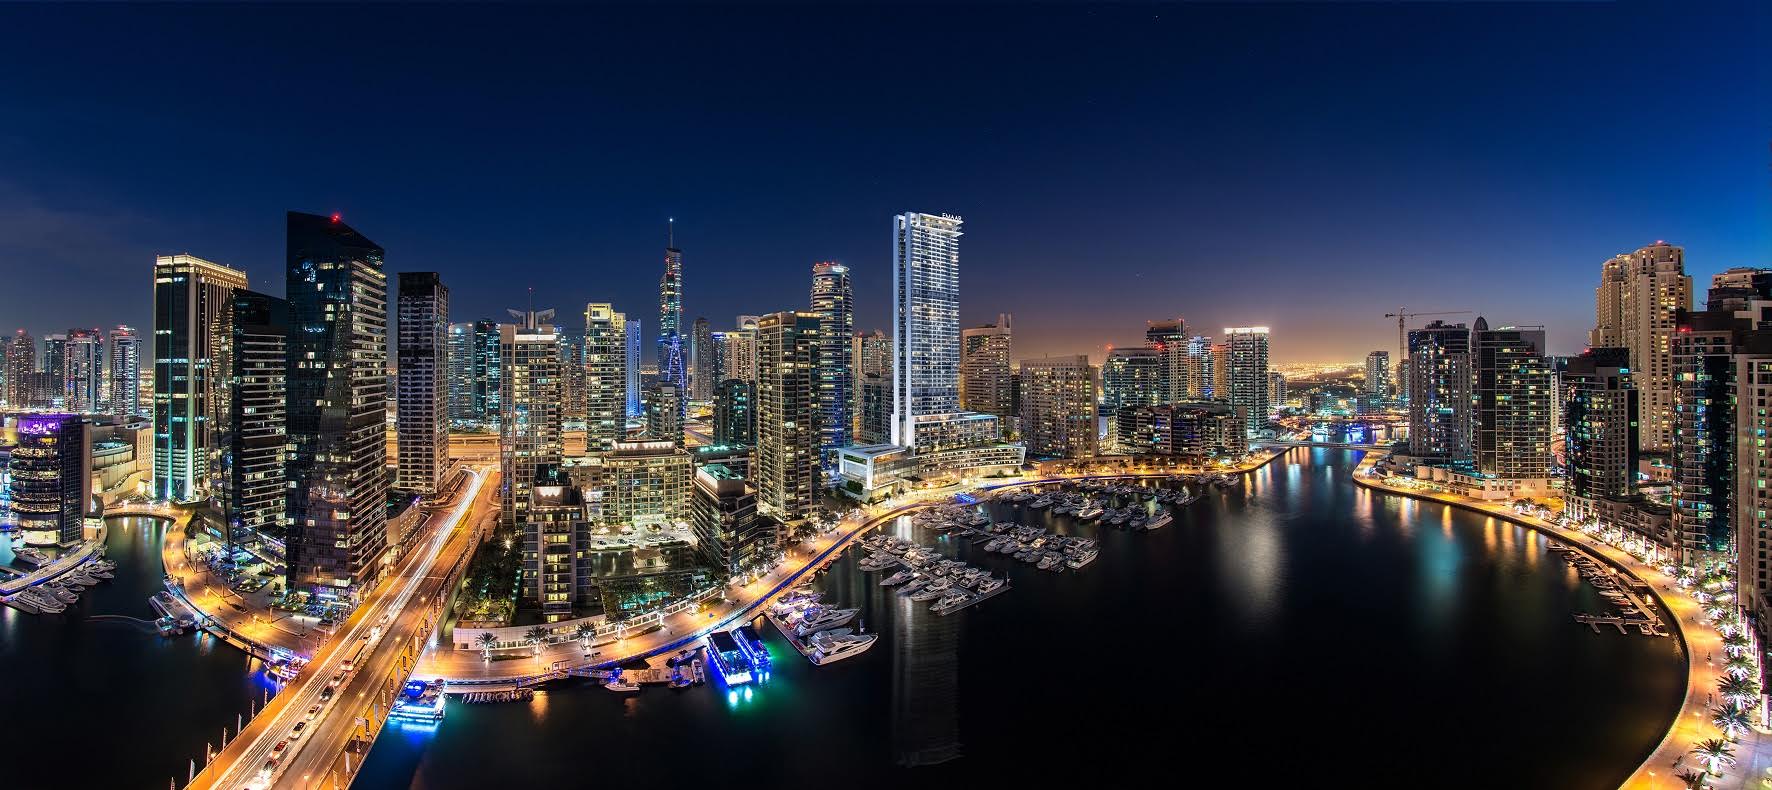 مجموعة إعمار للضيافة تكشف عن 6 مشاريع فندقية جديدة في الإمارات